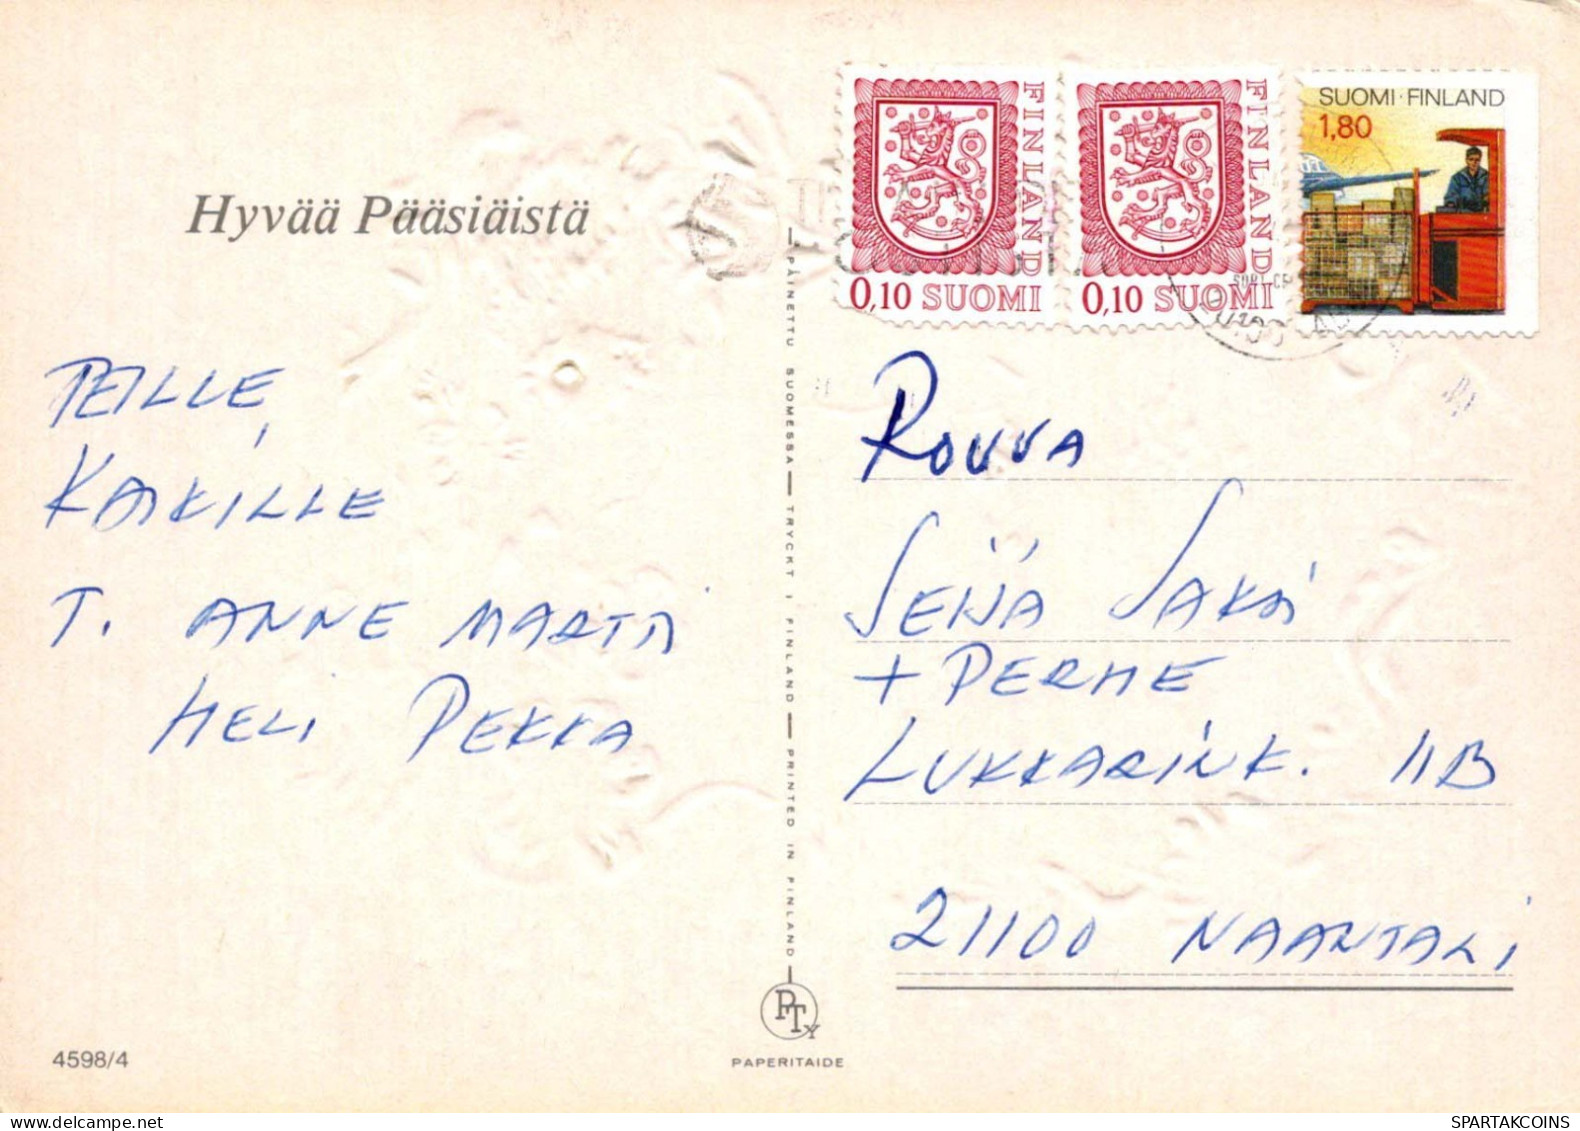 PASQUA POLLO UOVO Vintage Cartolina CPSM #PBP044.A - Ostern